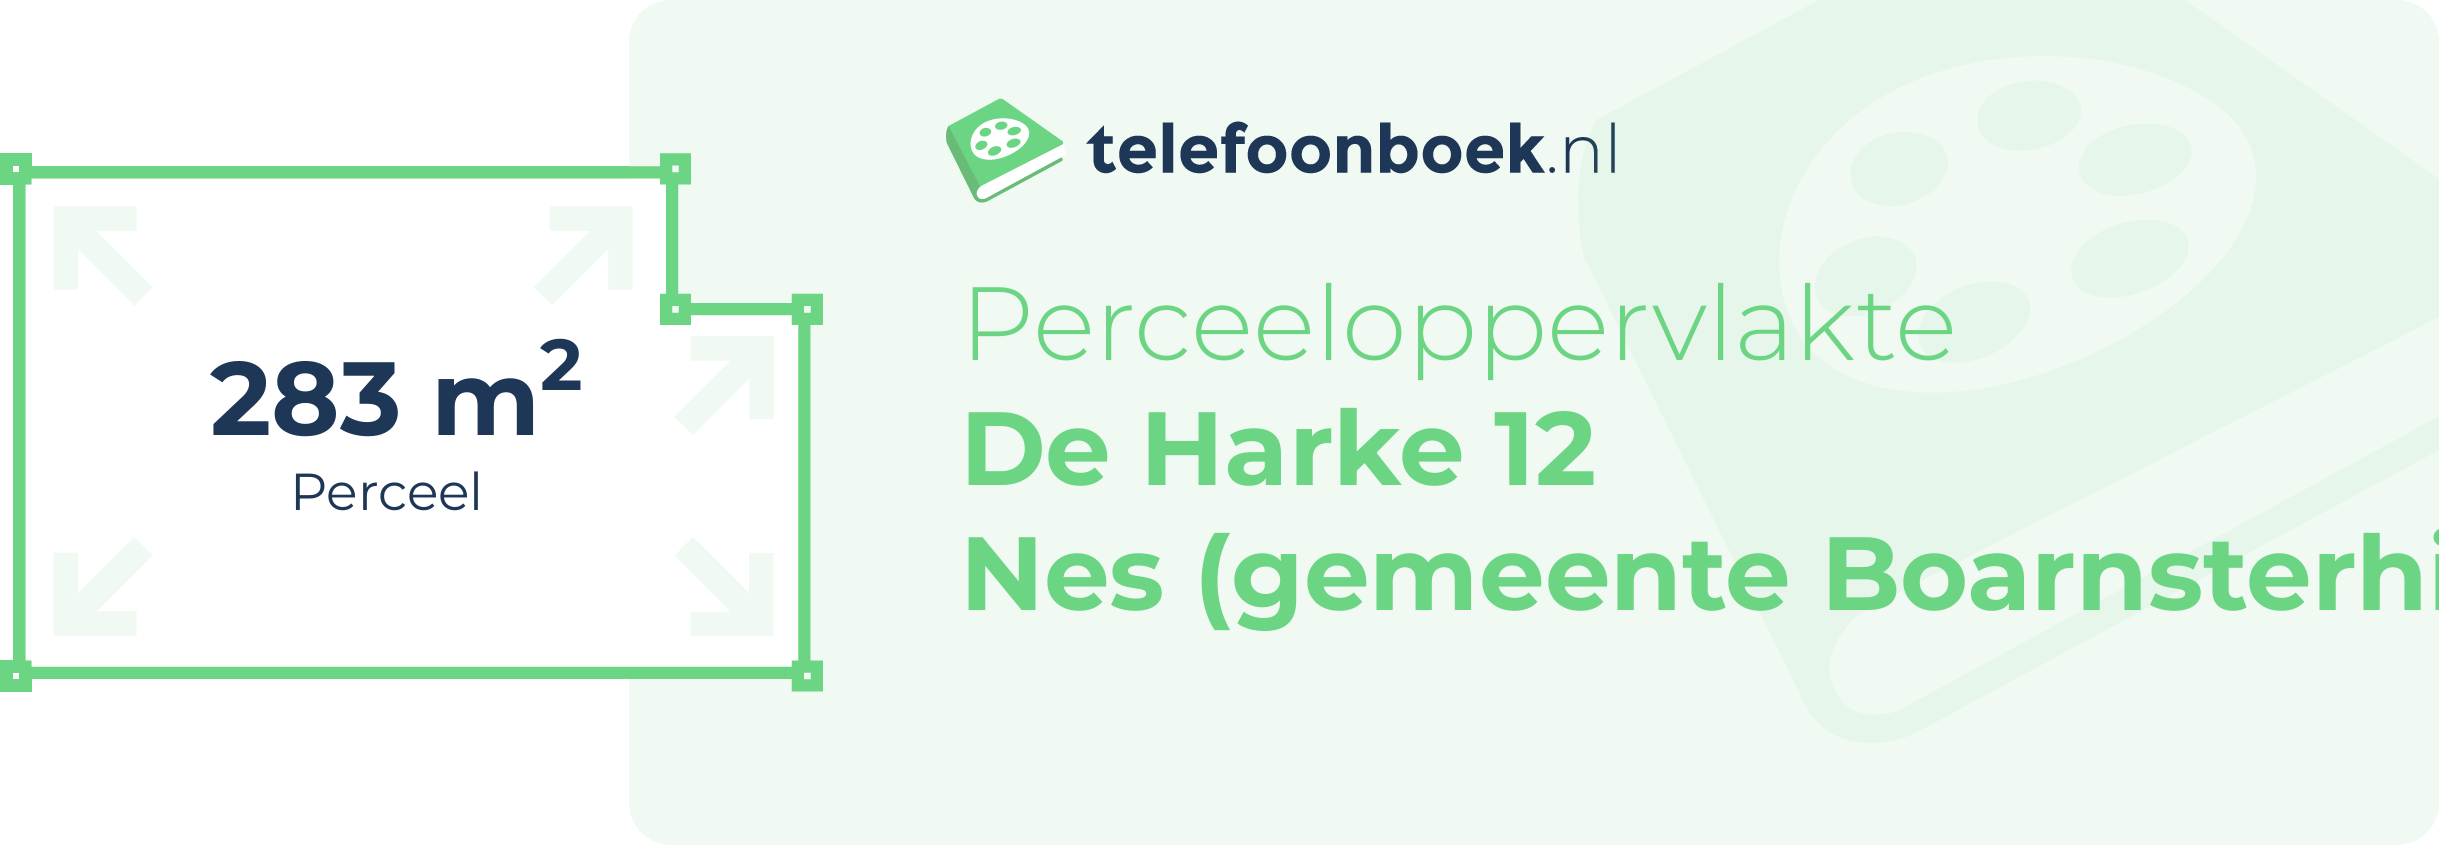 Perceeloppervlakte De Harke 12 Nes (gemeente Boarnsterhim Friesland)